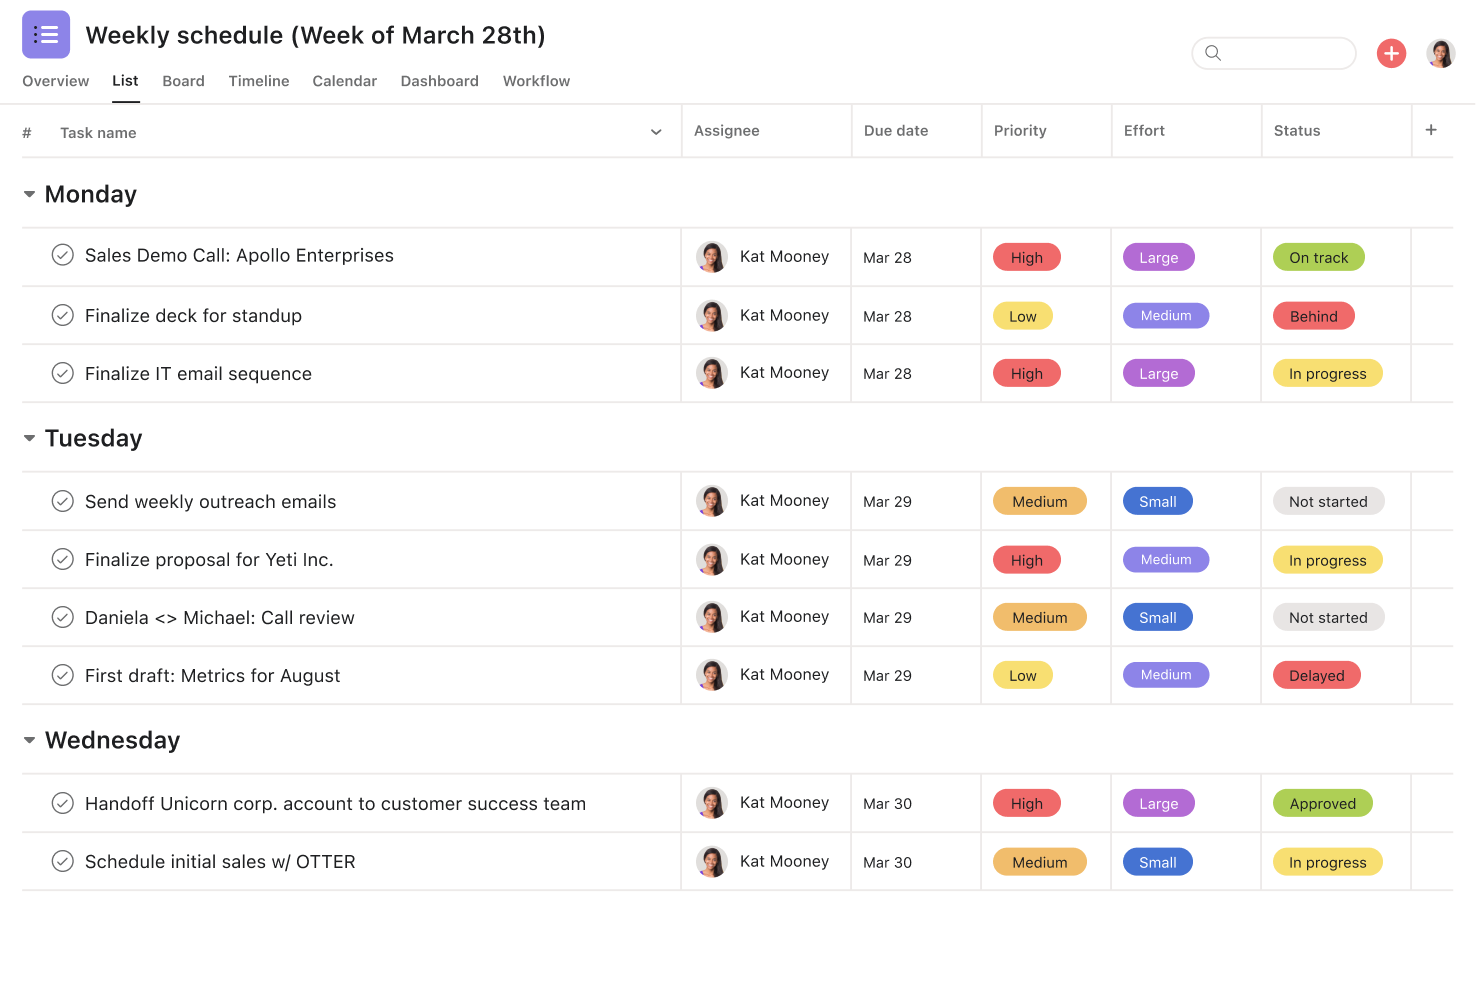 [Interface do produto] Agenda semanal ordenada por prioridade, esforço e status (visualização de lista)